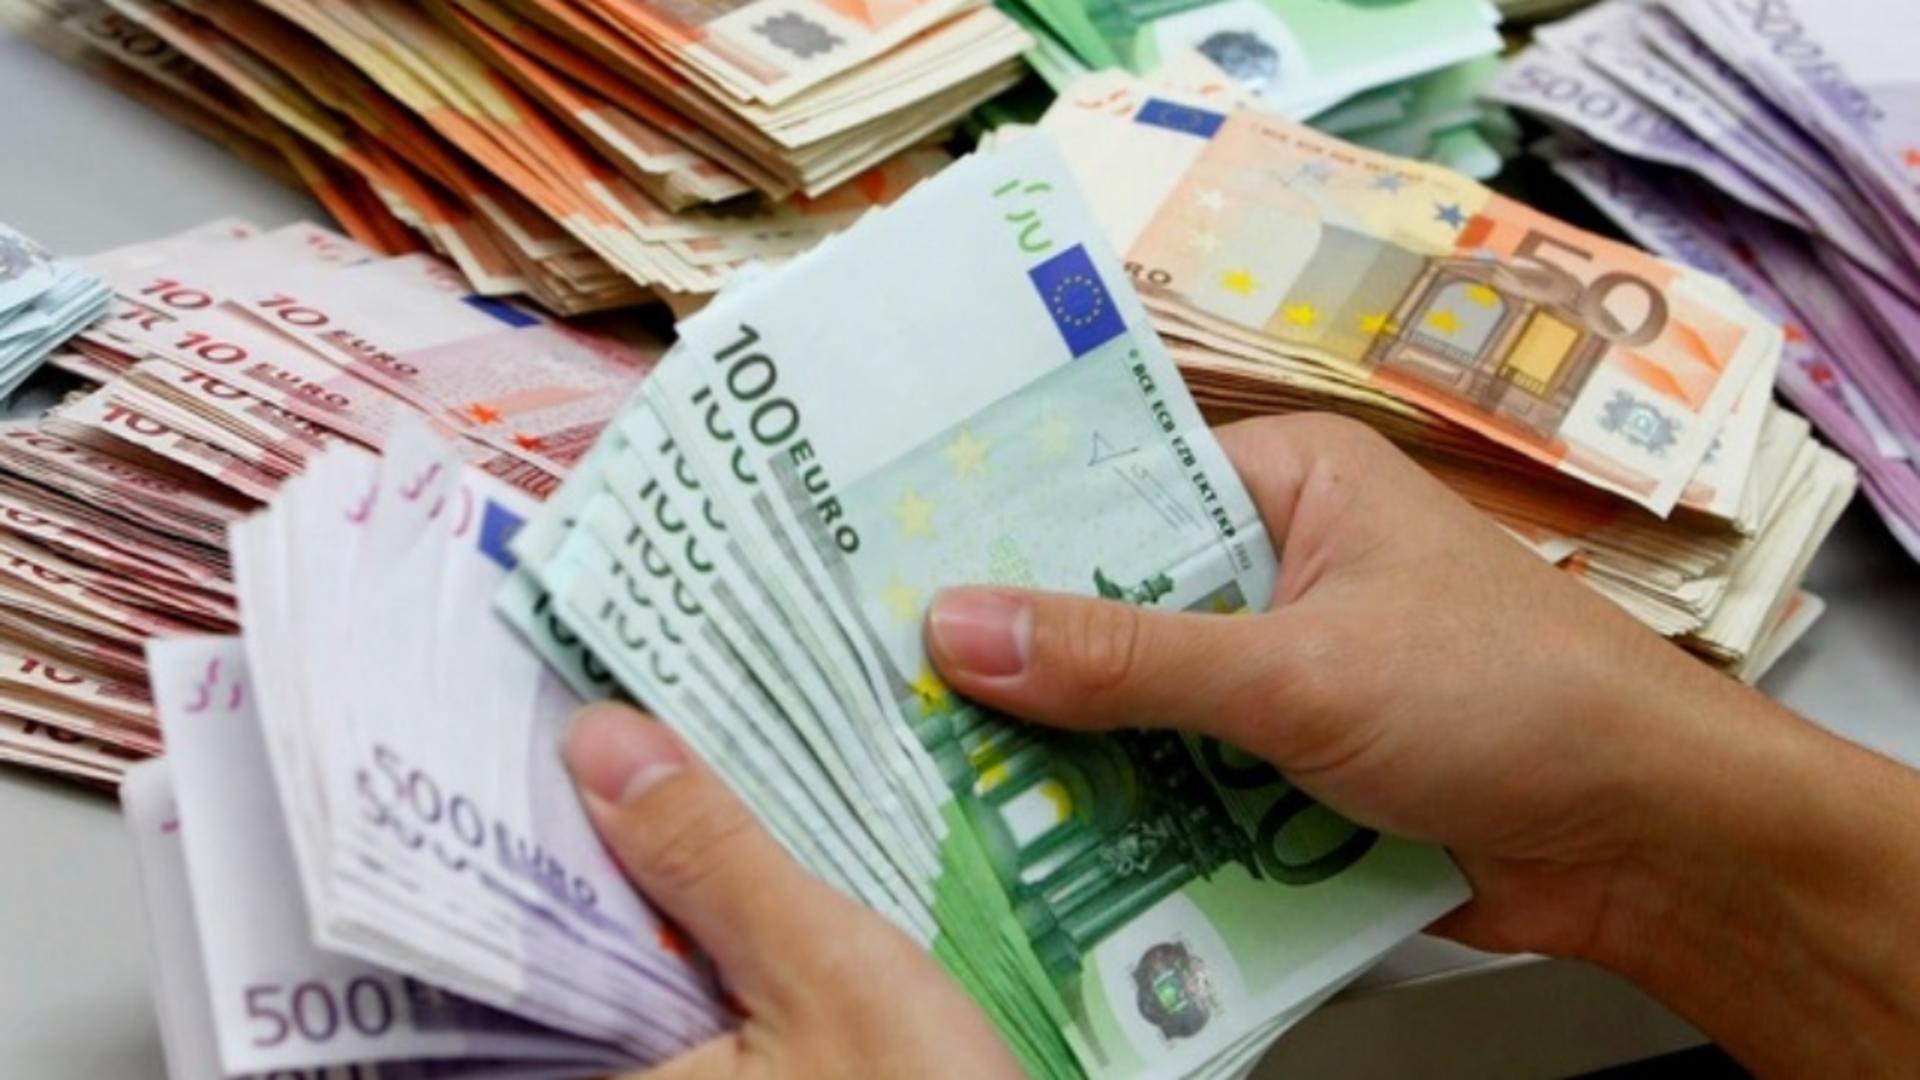 Vești bune! Au intrat banii din PNRR! România a primit 2,7 miliarde de euro. Rămâne de văzut și cum vor cheltui acești bani